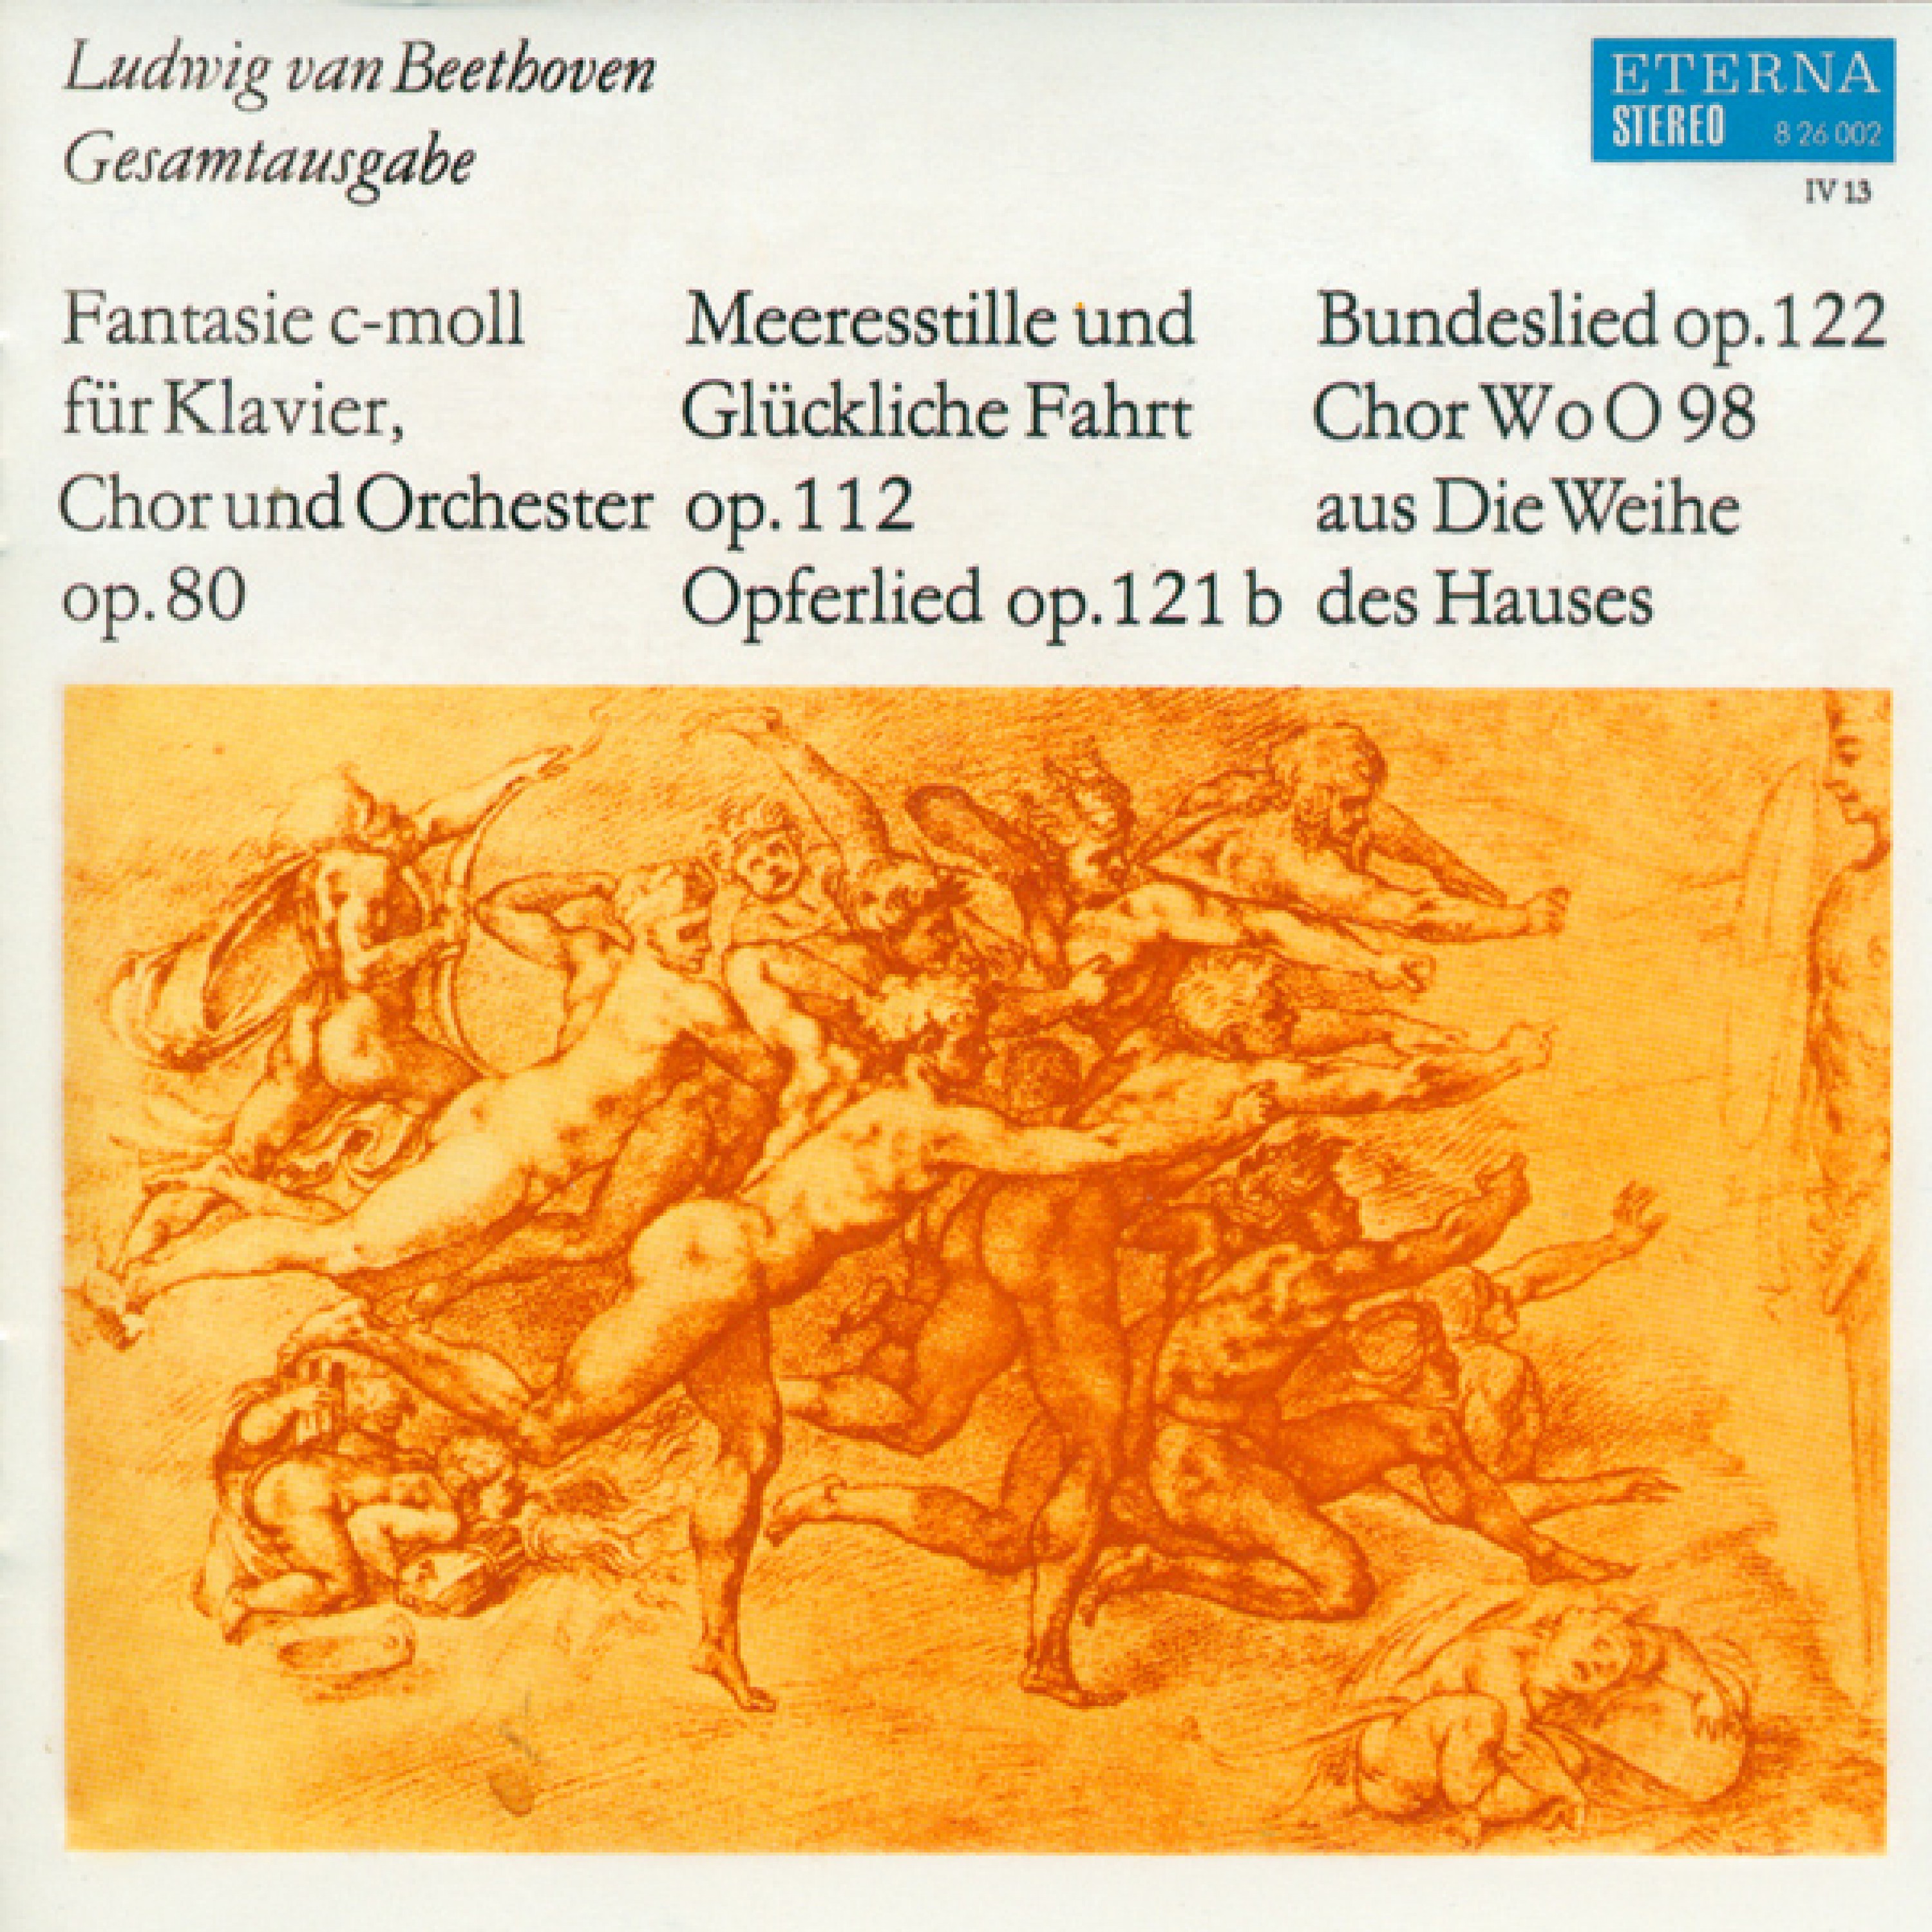 Opferlied, Op. 121b (second version): Opferlied, Op. 121b (second version)